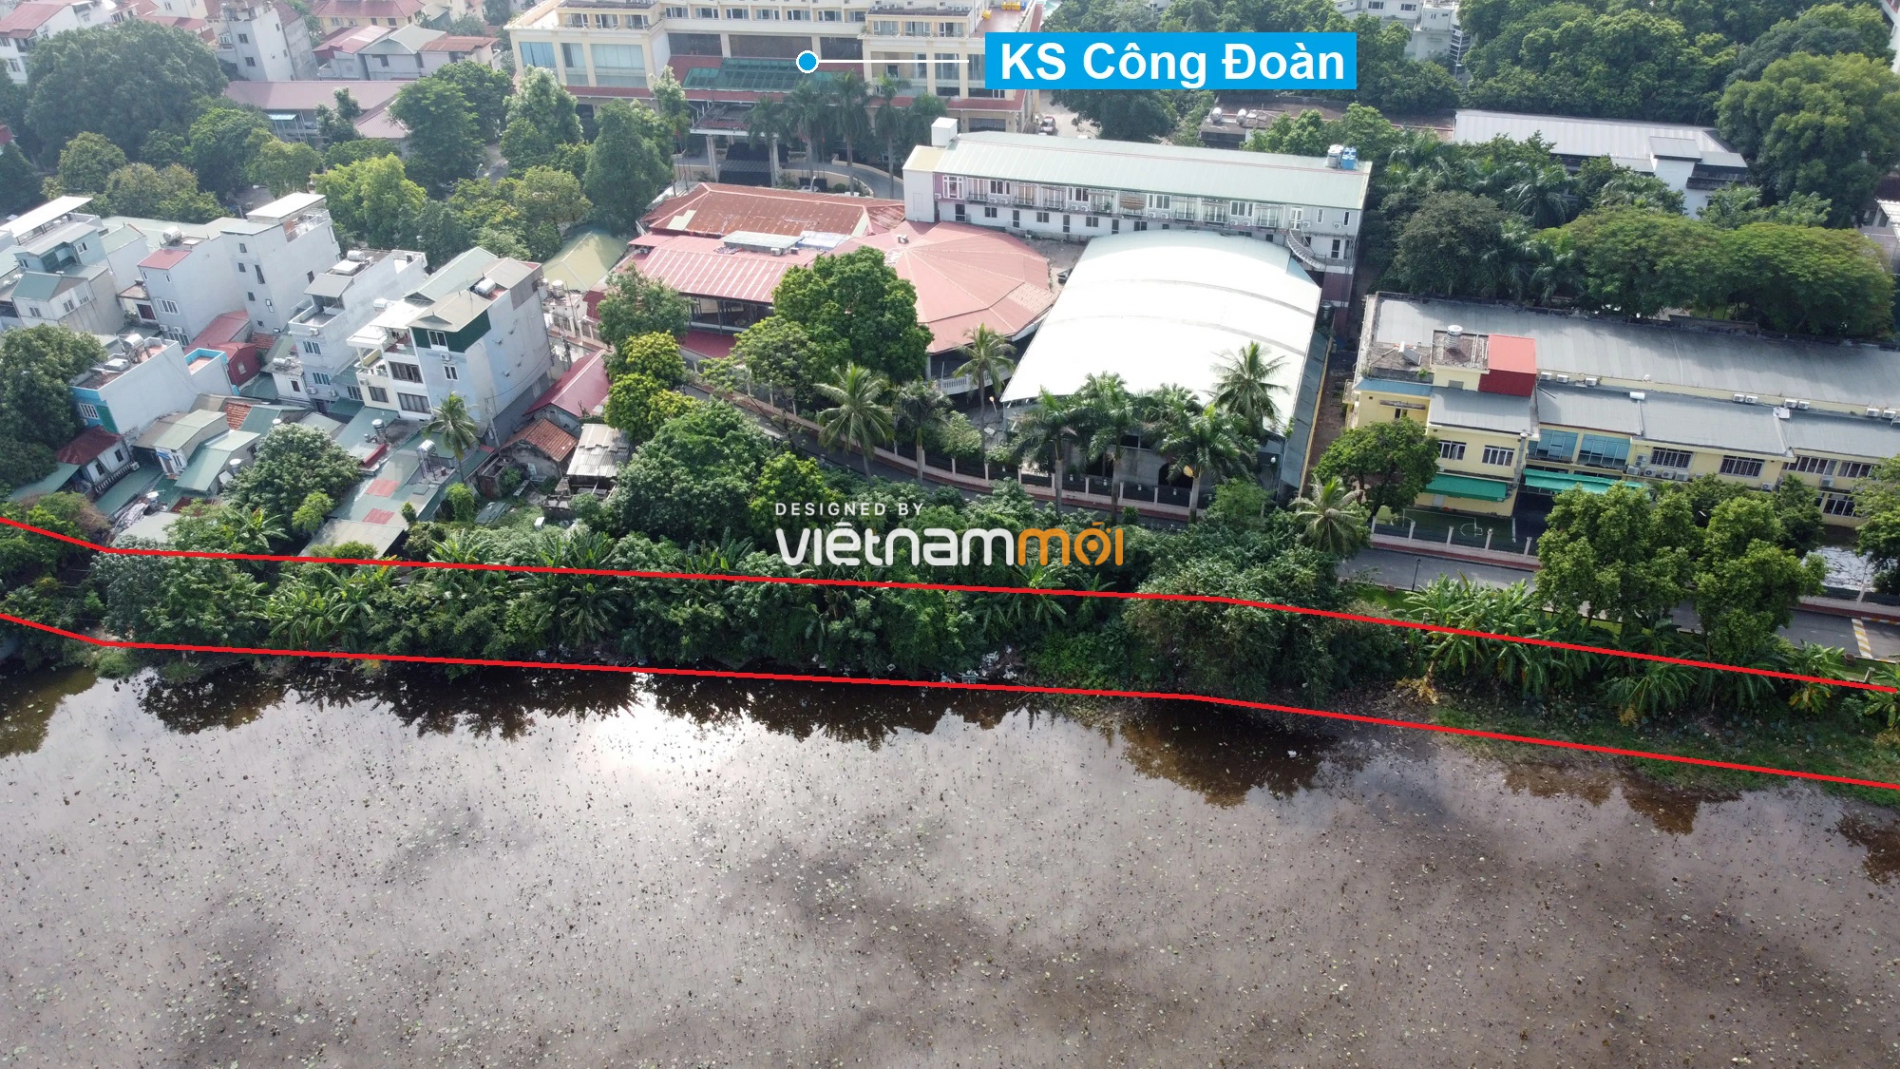 Những khu đất sắp thu hồi để mở đường ở quận Tây Hồ, Hà Nội (phần 4) - Ảnh 4.